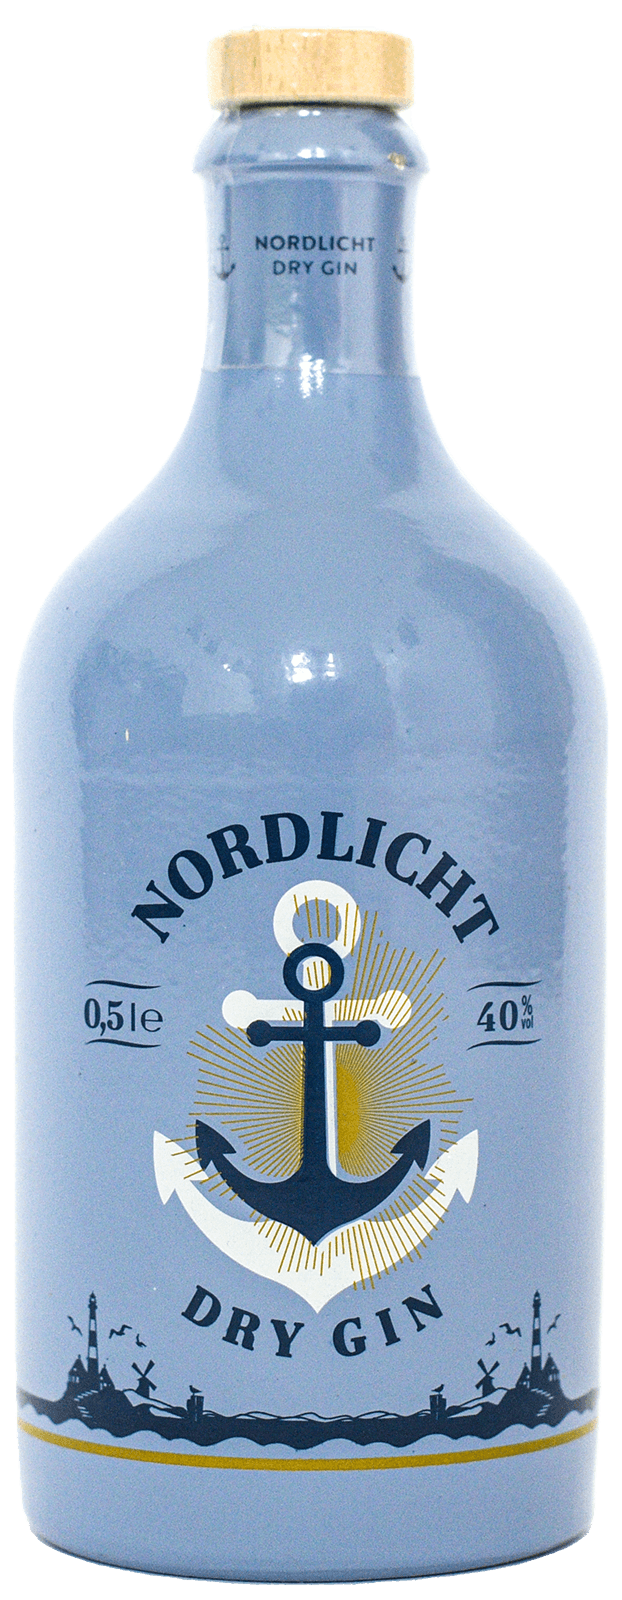 Bild von einer Flasche Nordlicht Dry Gin mit klarer blauer Etikettierung vor minimalistischem Hintergrund.